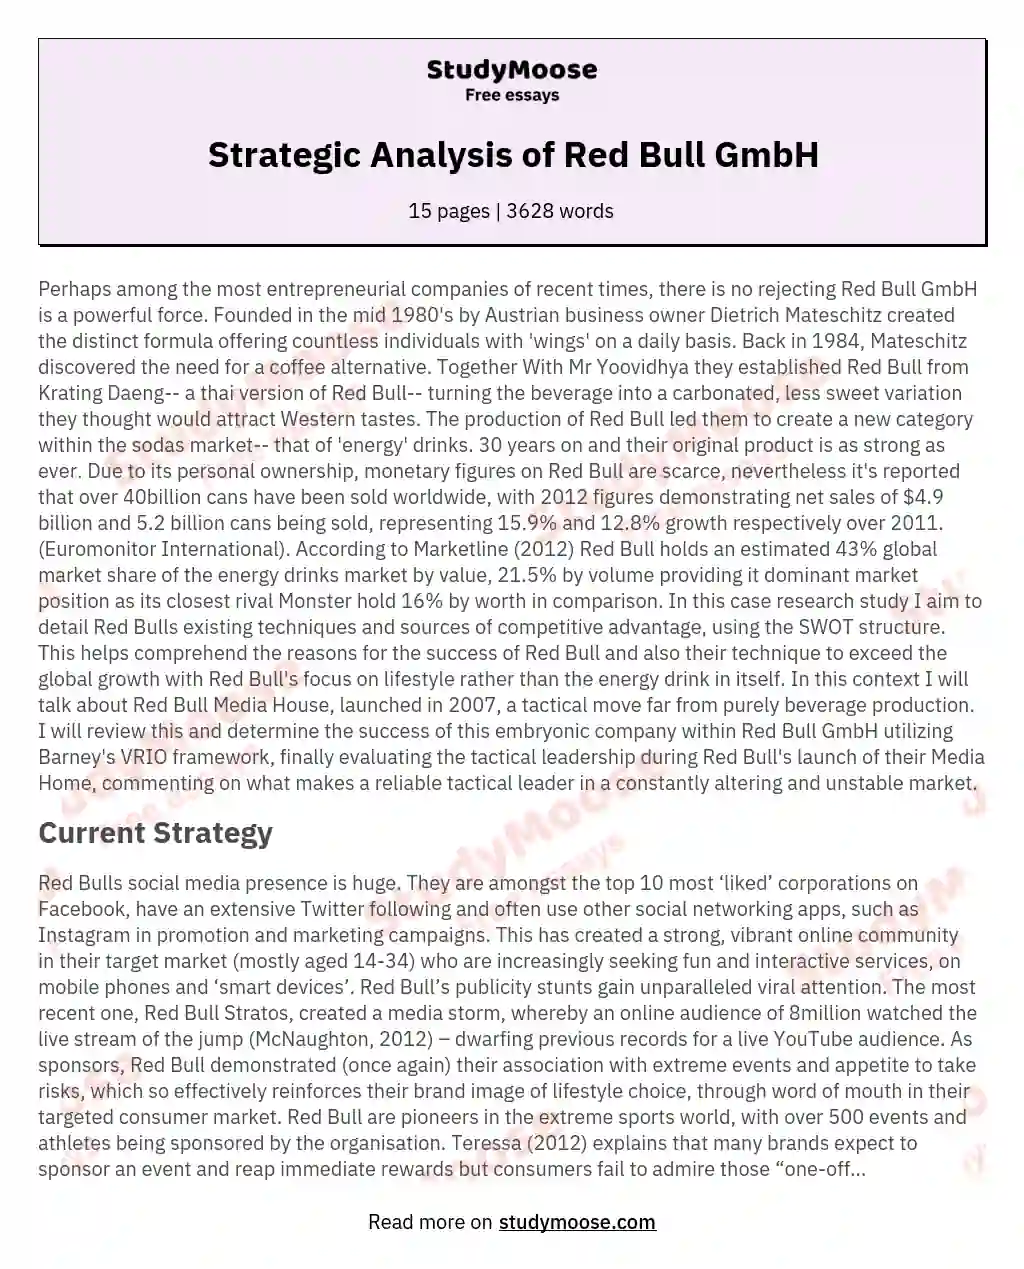 Strategic Analysis of Red Bull GmbH